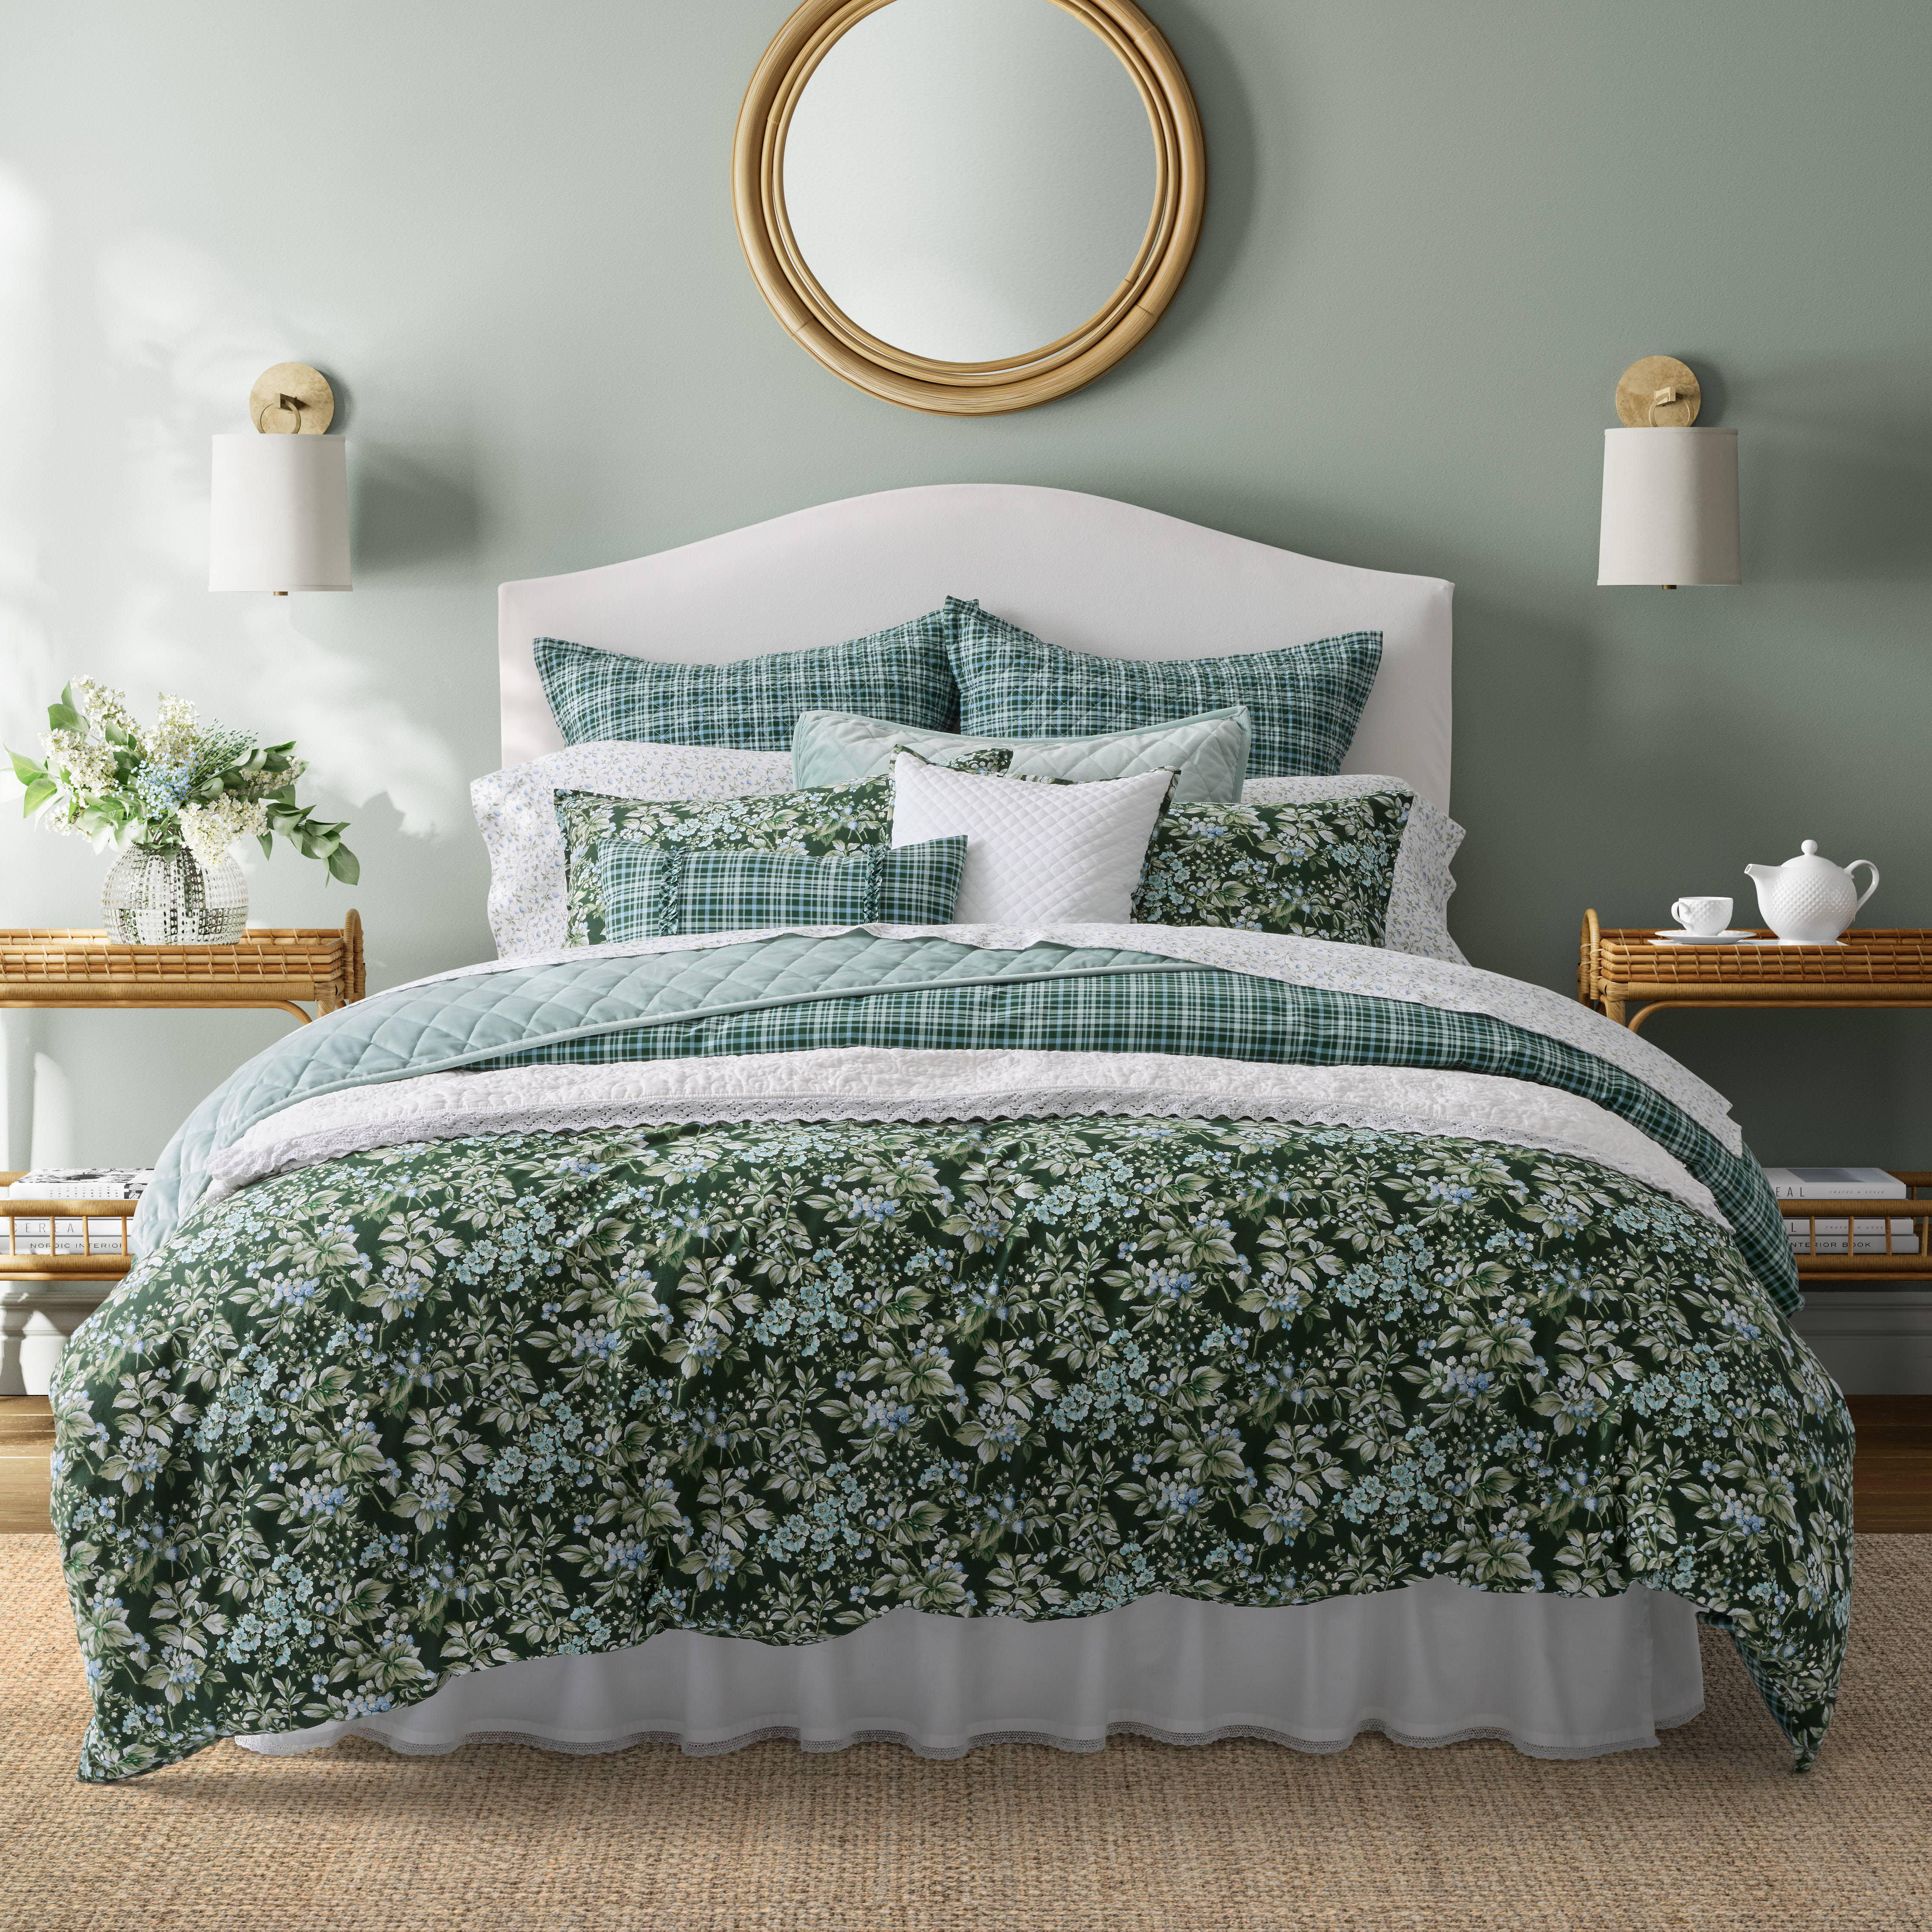 Botanical Floral Comforter Queen 100% Cotton Duvet Set 3 Pieces Bedding Set  with 2 Pillowcases Beige Reversible Comforter Set Flower Cotton Quilt